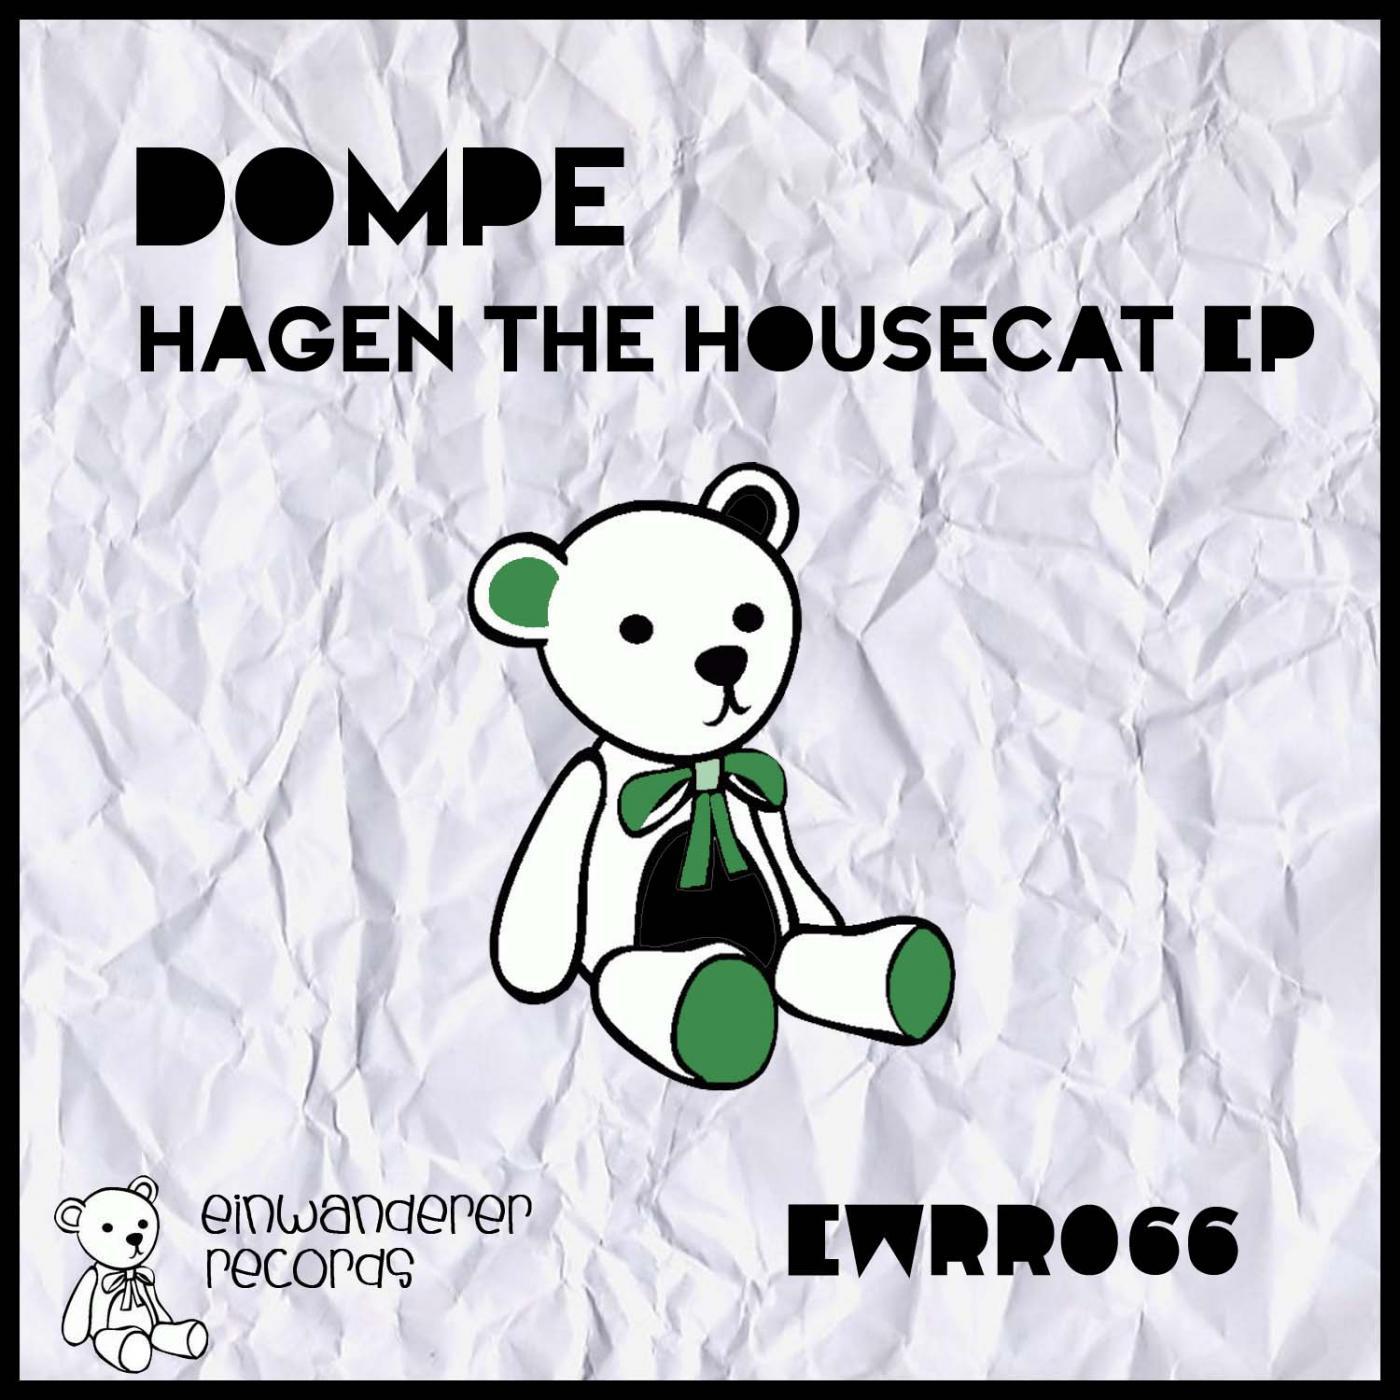 Hagen the Housecat